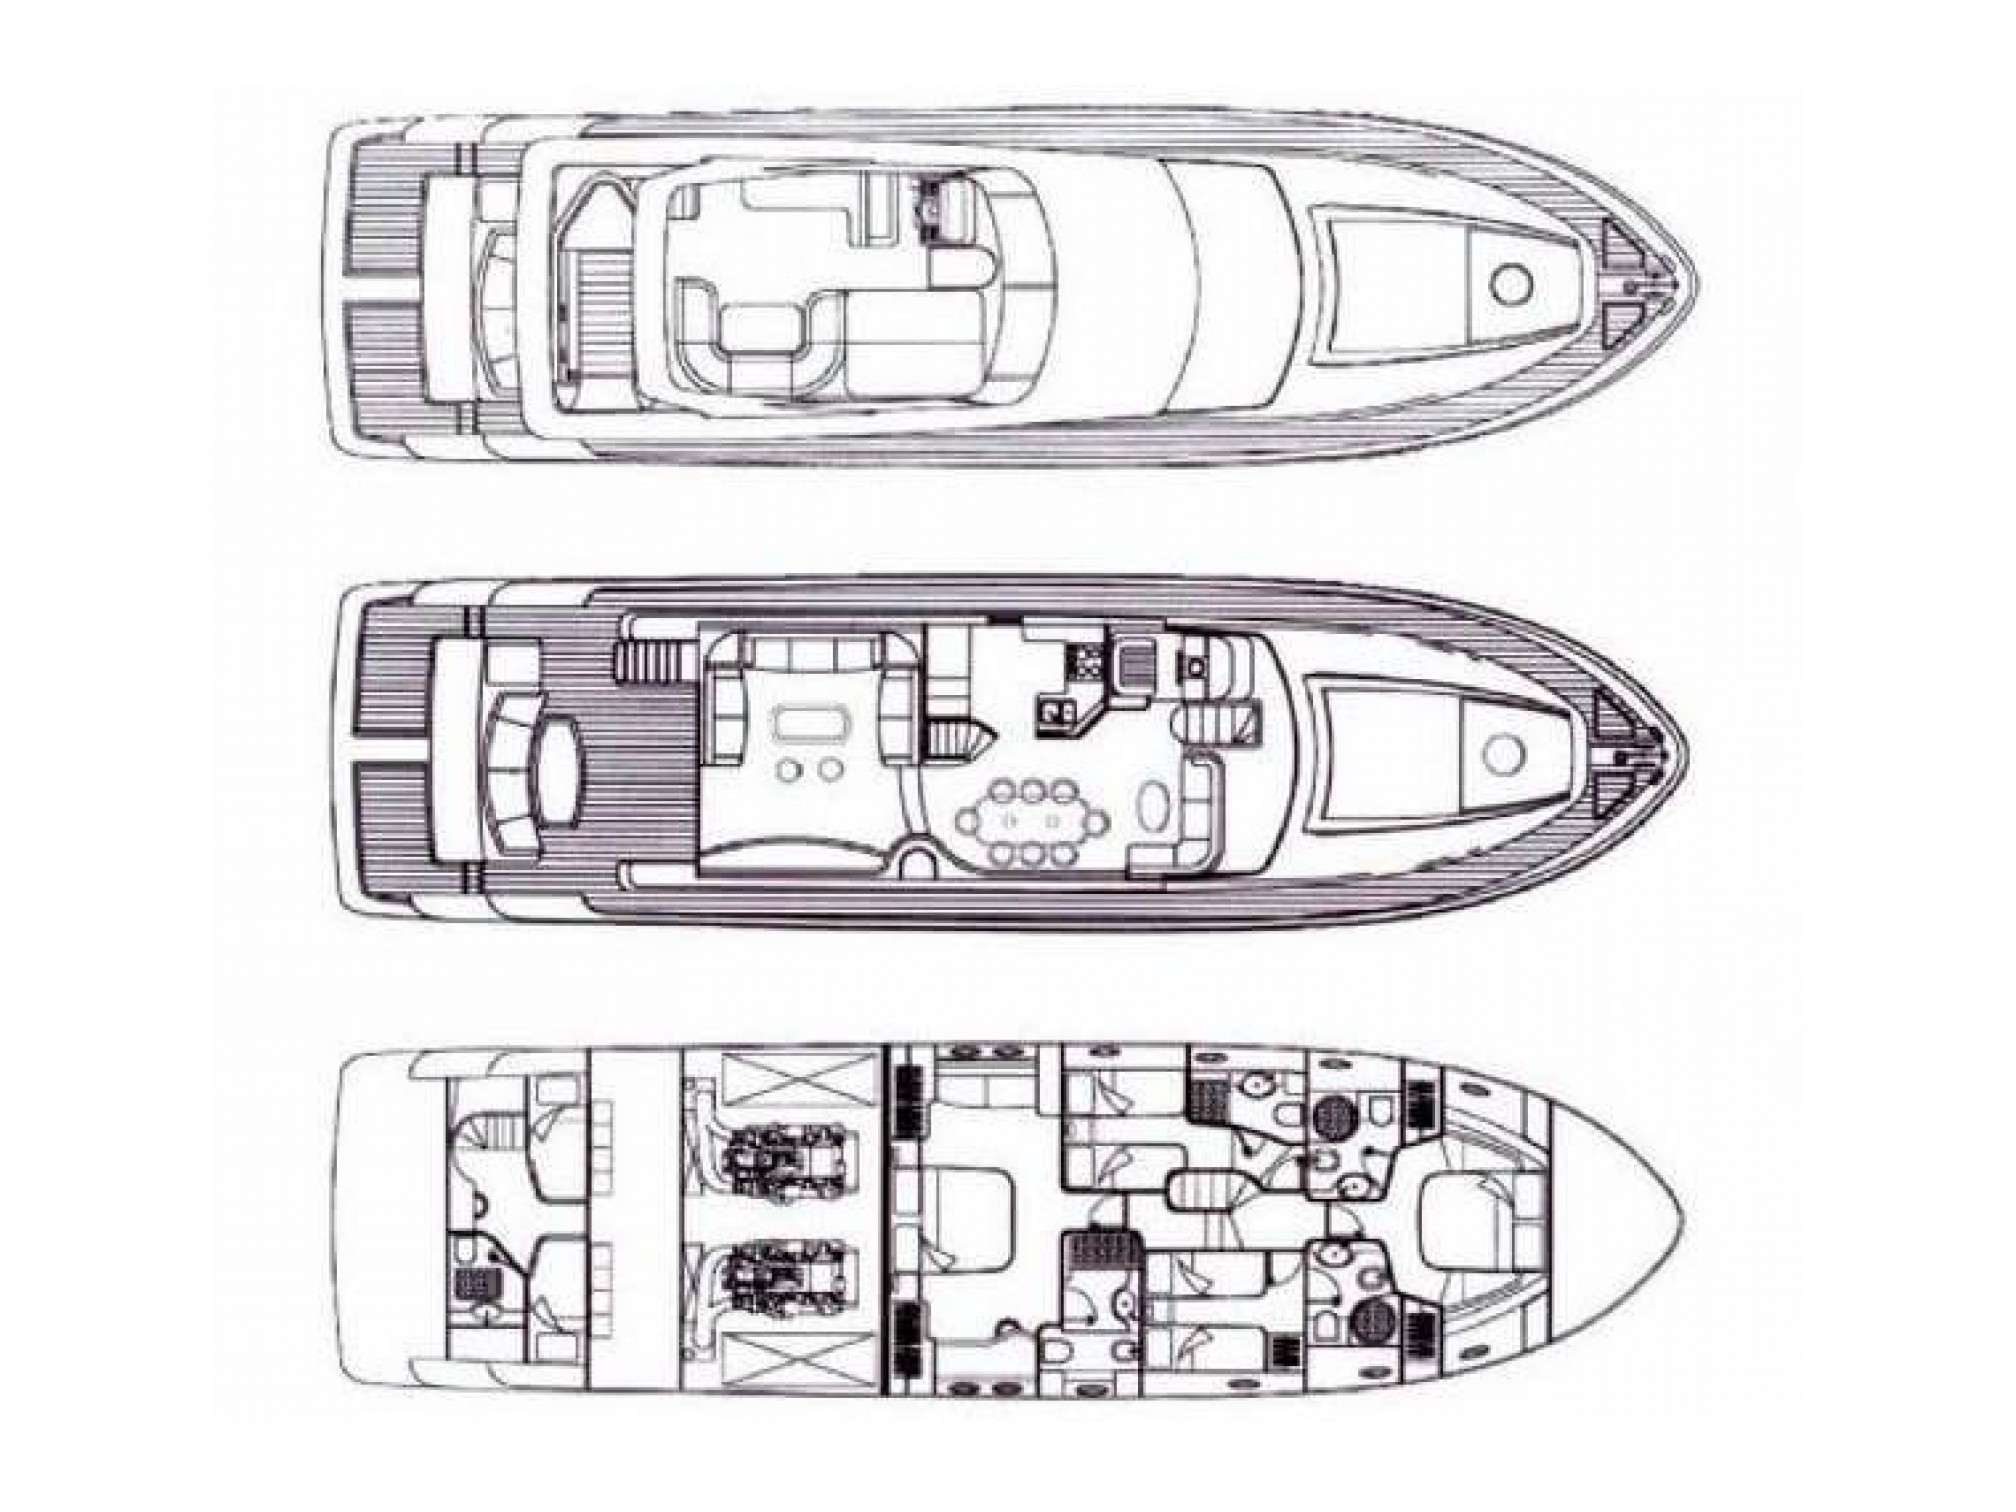 Firebird 68 yacht charter layout